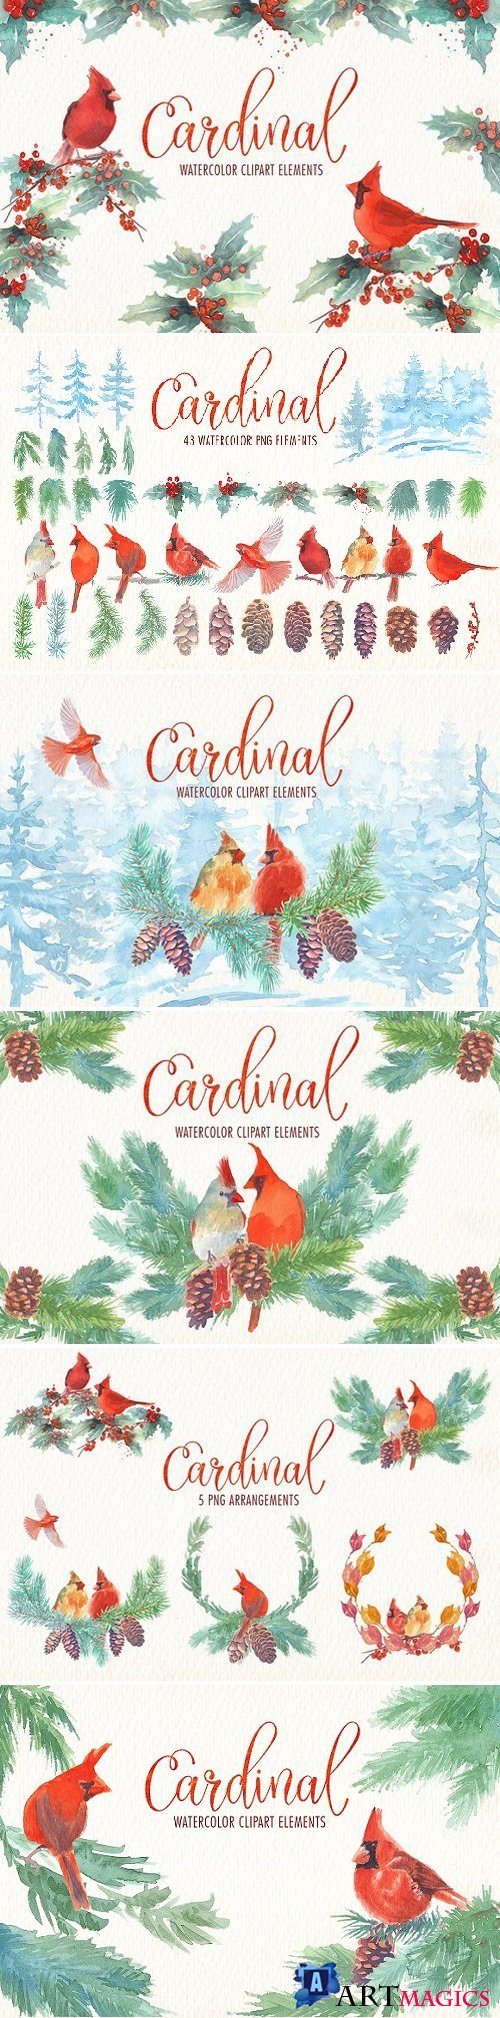 Cardinal bird watercolor clipart set 1870858